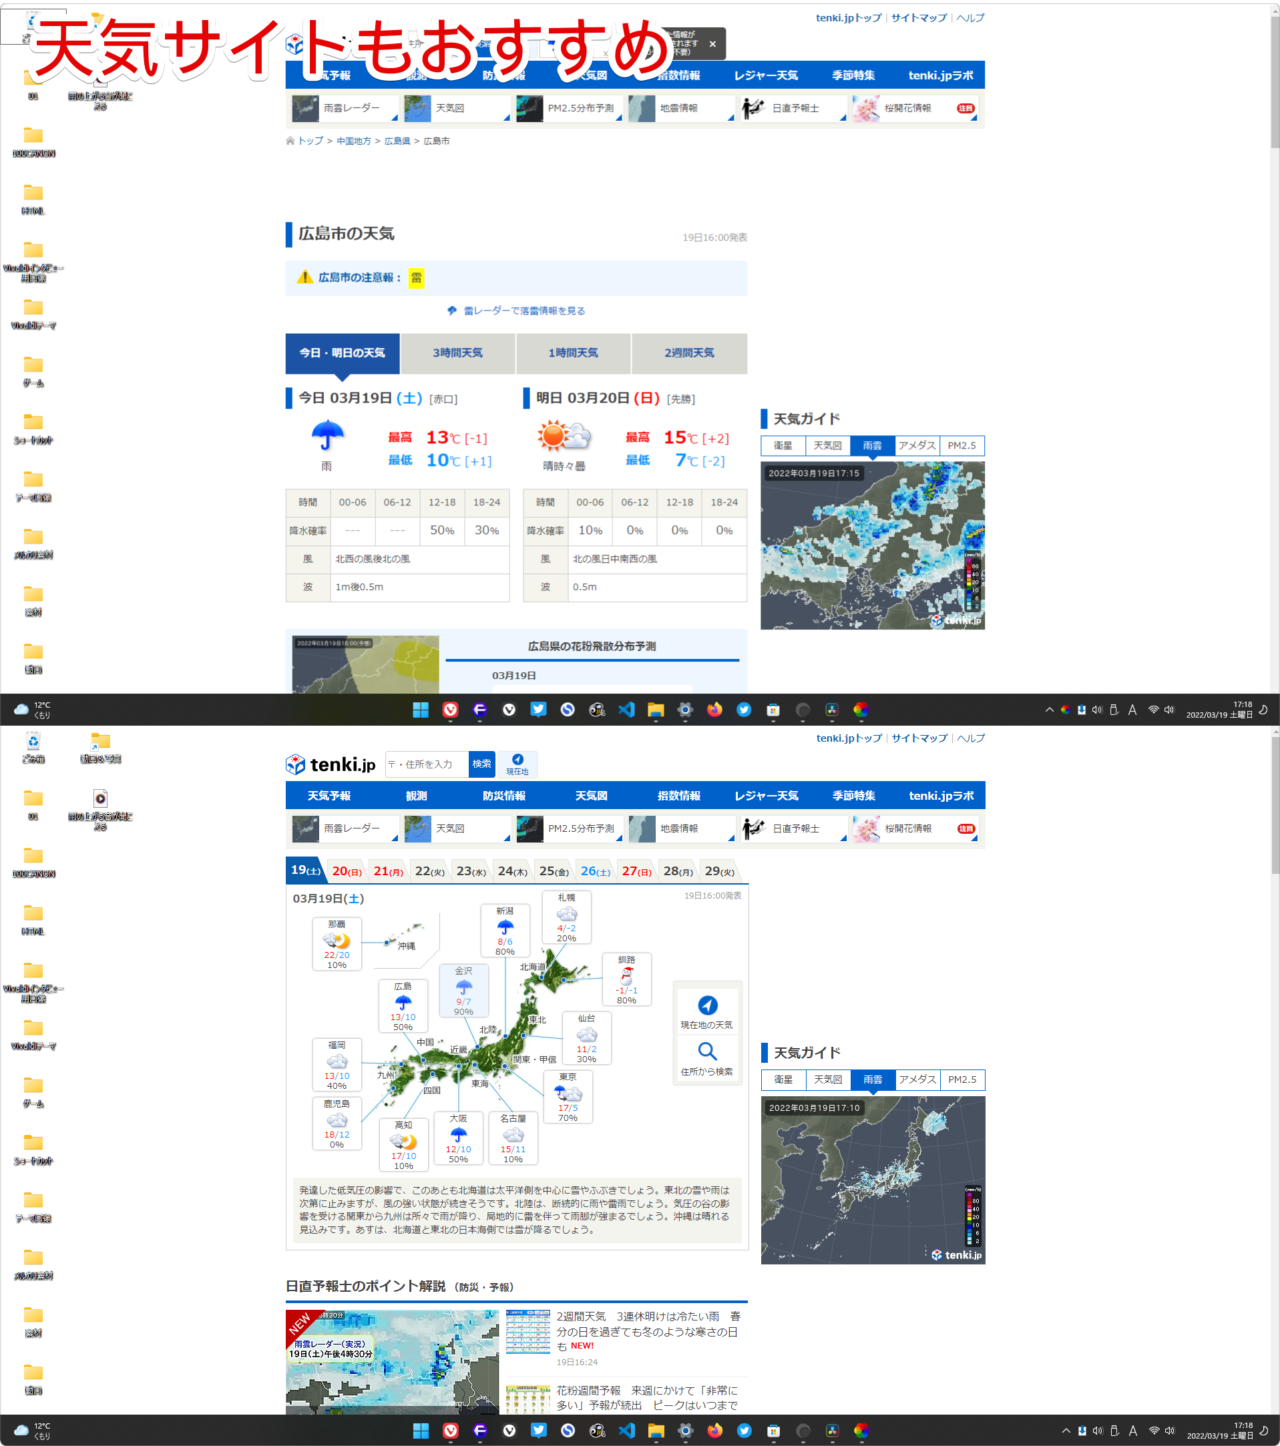 「日本気象協会 tenki.jp【公式】 / 天気・地震・台風」を背景にするのもあり